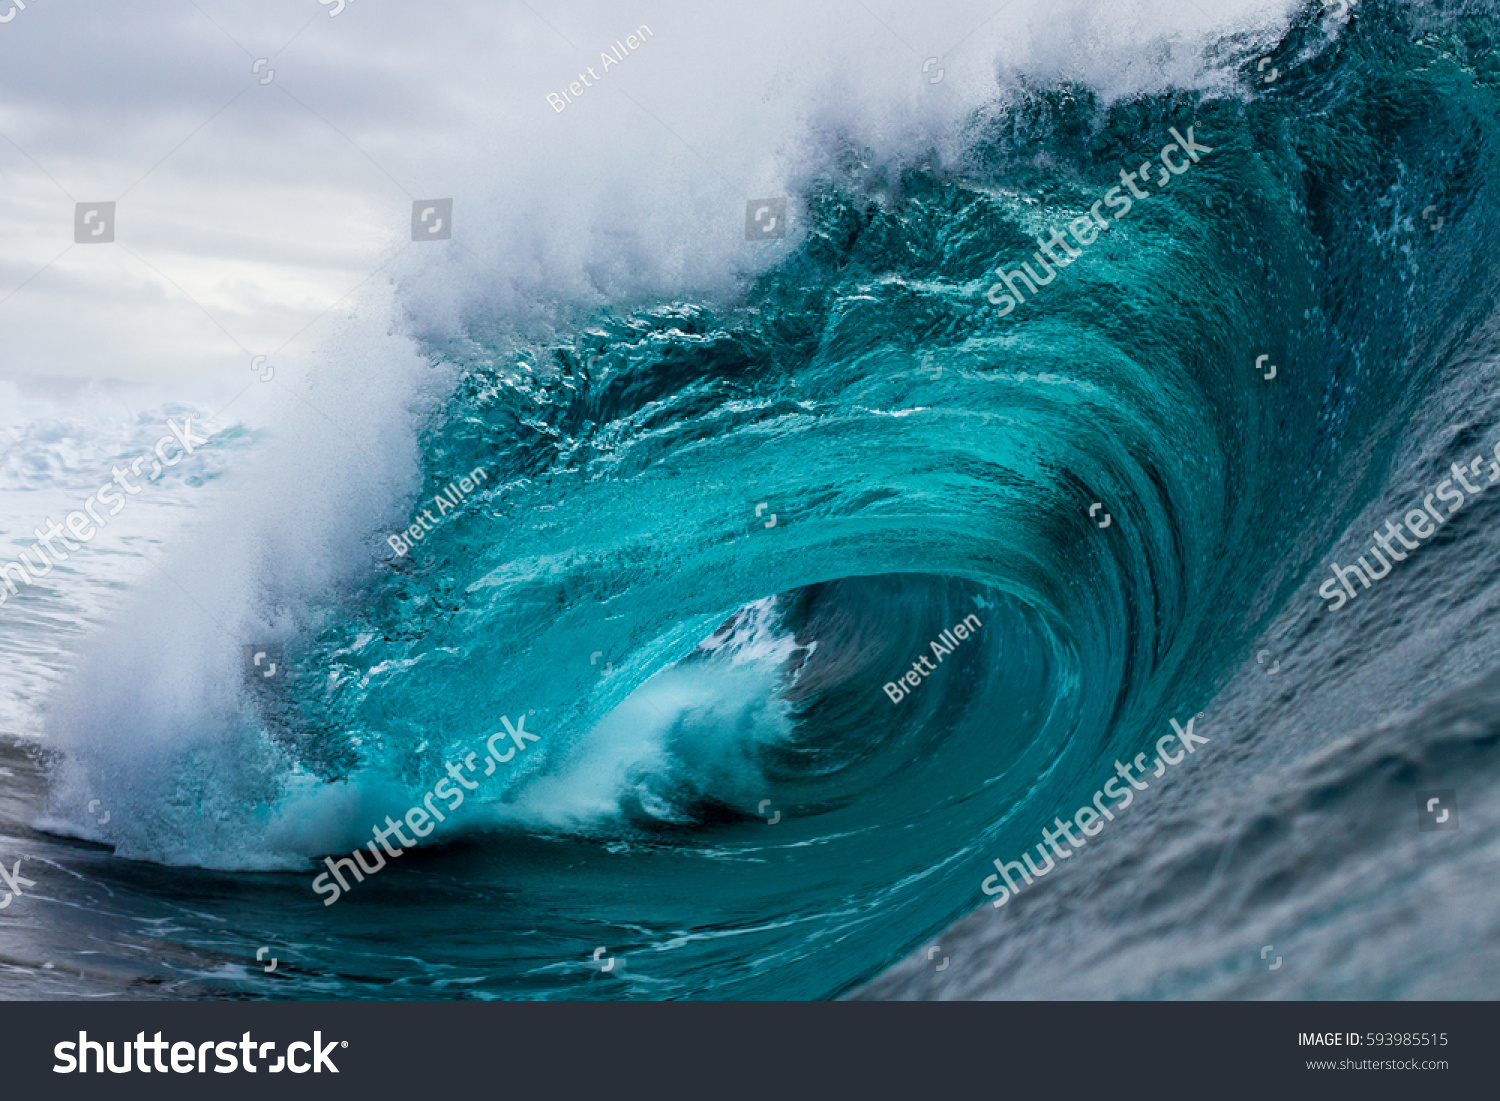 28,909 Ocean wave curl Images, Stock Photos & Vectors | Shutterstock